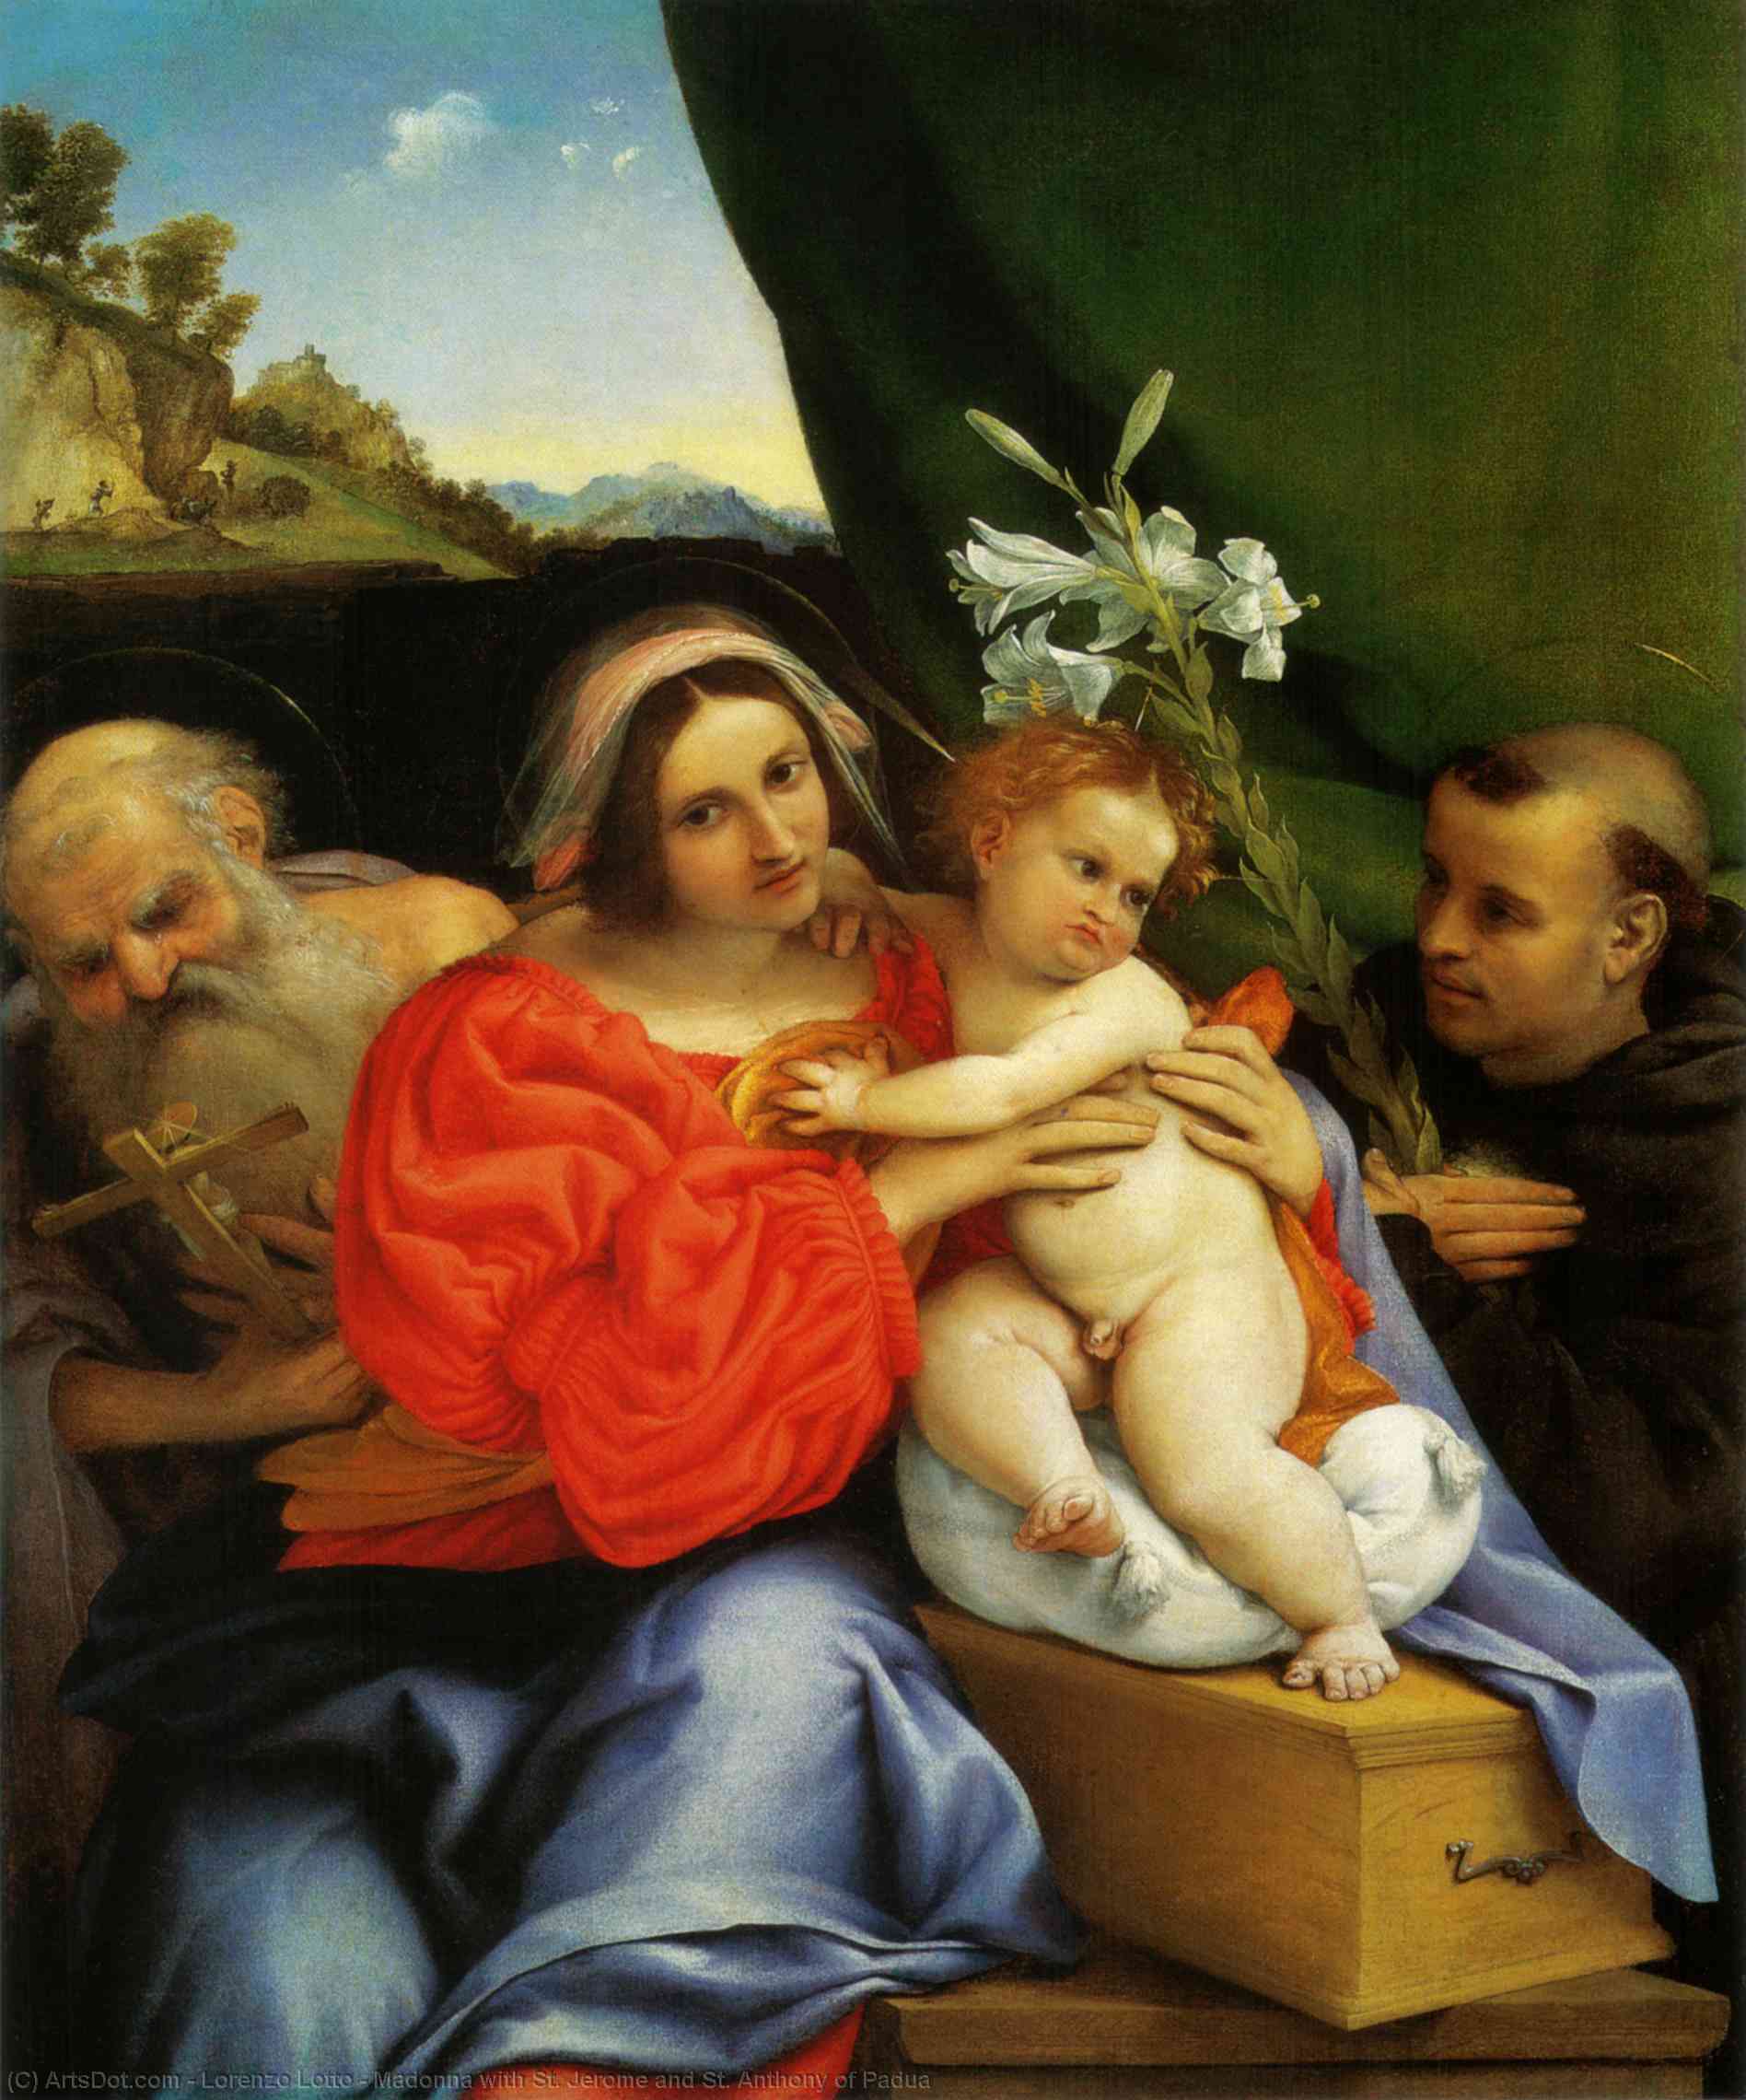 Wikioo.org - Bách khoa toàn thư về mỹ thuật - Vẽ tranh, Tác phẩm nghệ thuật Lorenzo Lotto - Madonna with St. Jerome and St. Anthony of Padua